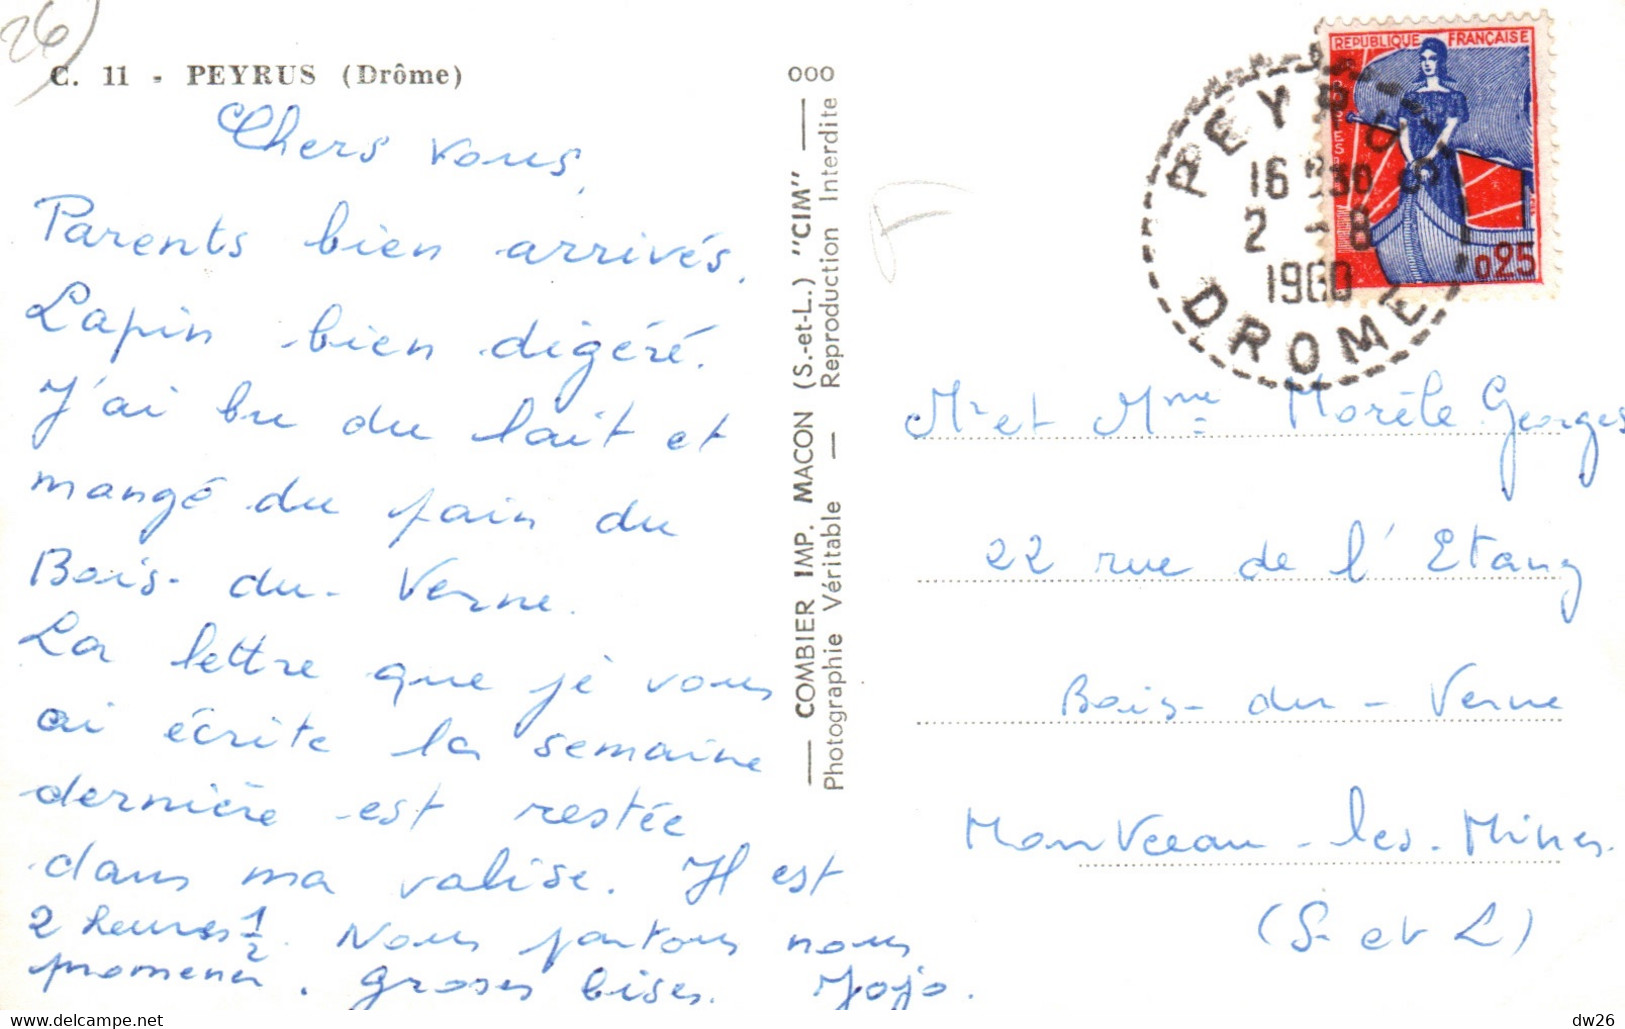 Souvenir De Peyrus (Drôme) Multivues - Editions Combier - Carte N° C. 11 - Greetings From...